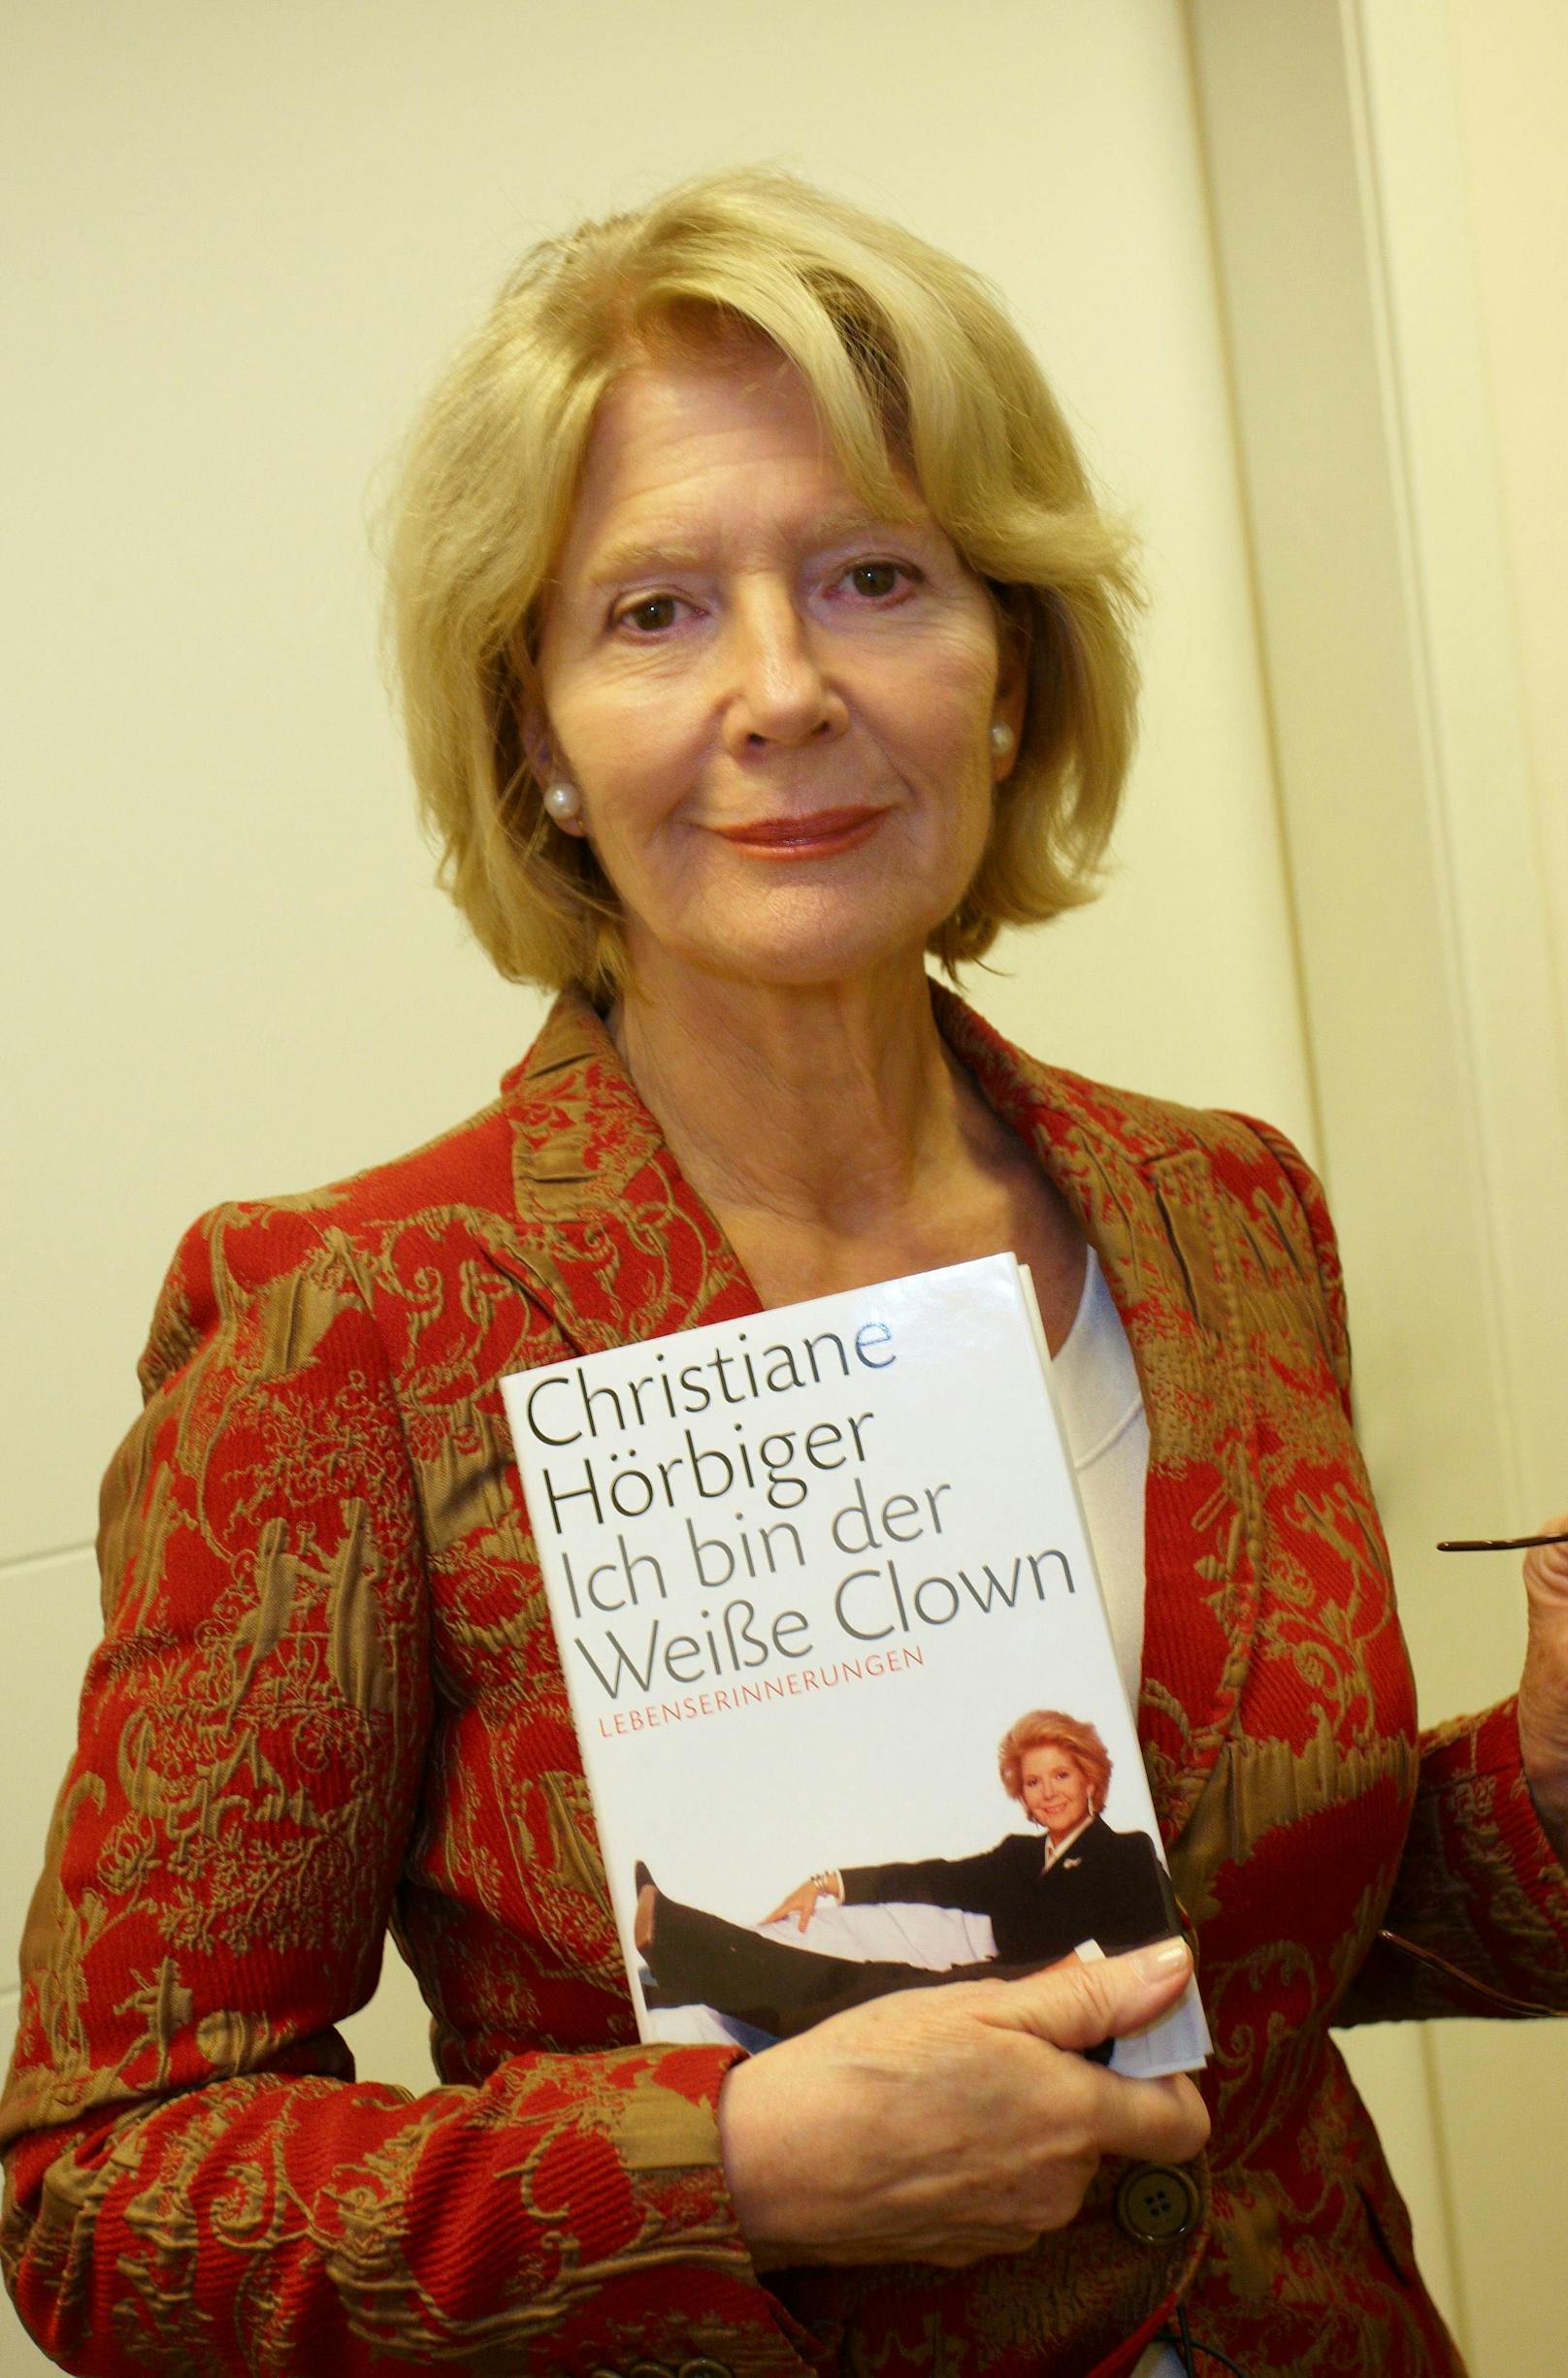 Die Wienerin bei ihrer Buchpräsentation "Ich bin der weiße Clown" 2008.